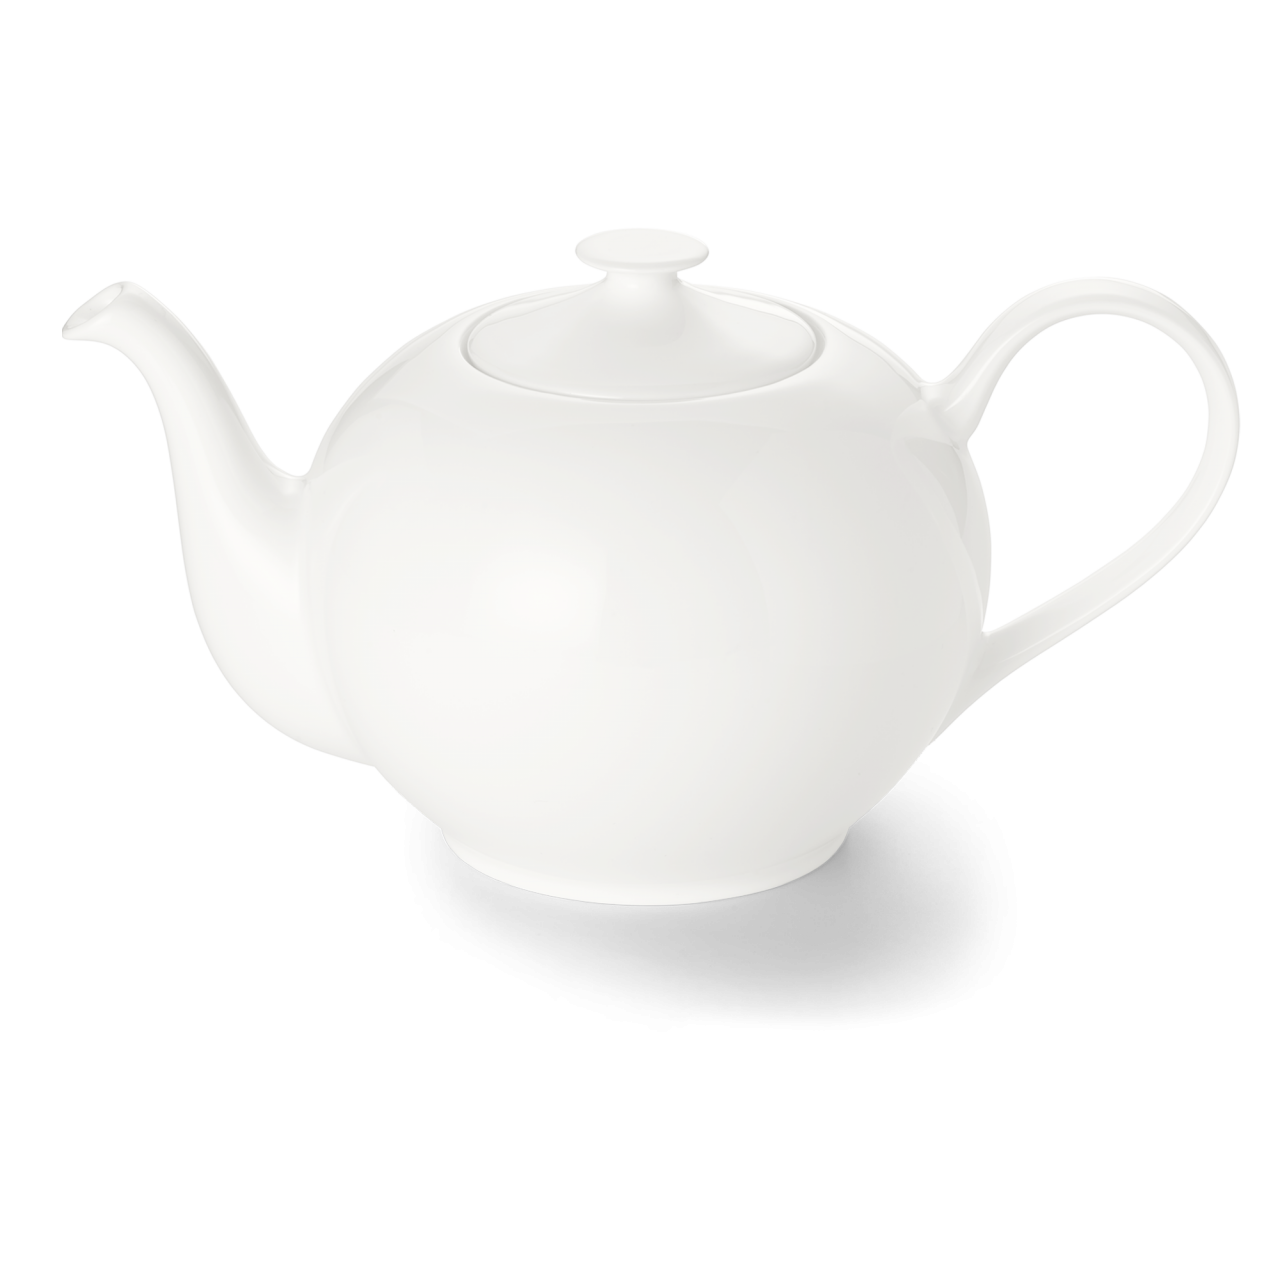 Dibbern - Classic - Teapot - 1.3L - Germany-1